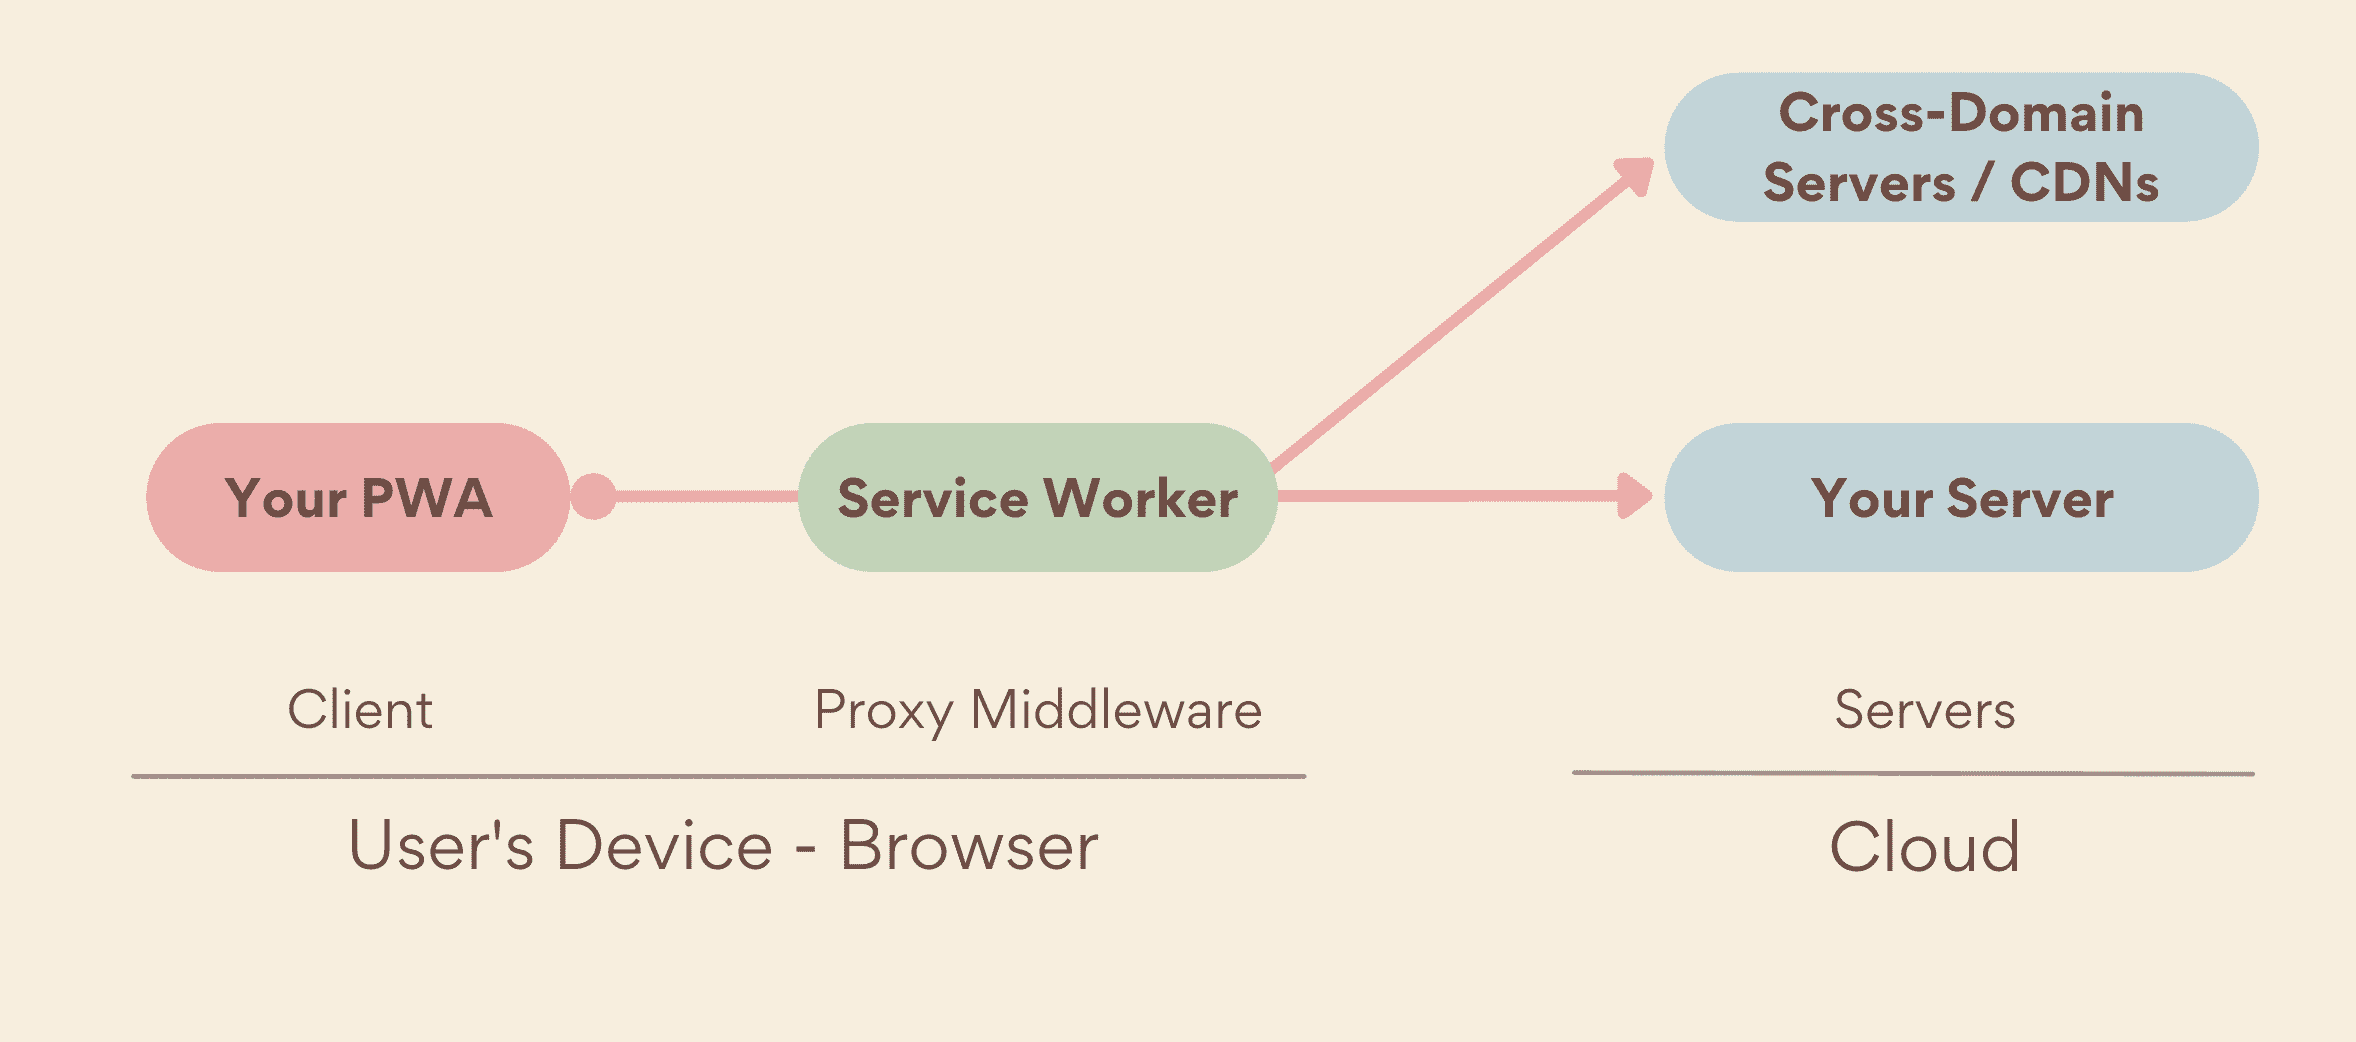 Сервисный работник в качестве промежуточного прокси-сервера, работающего на стороне устройства между вашим PWA и серверами, включая как ваши собственные серверы, так и междоменные серверы.